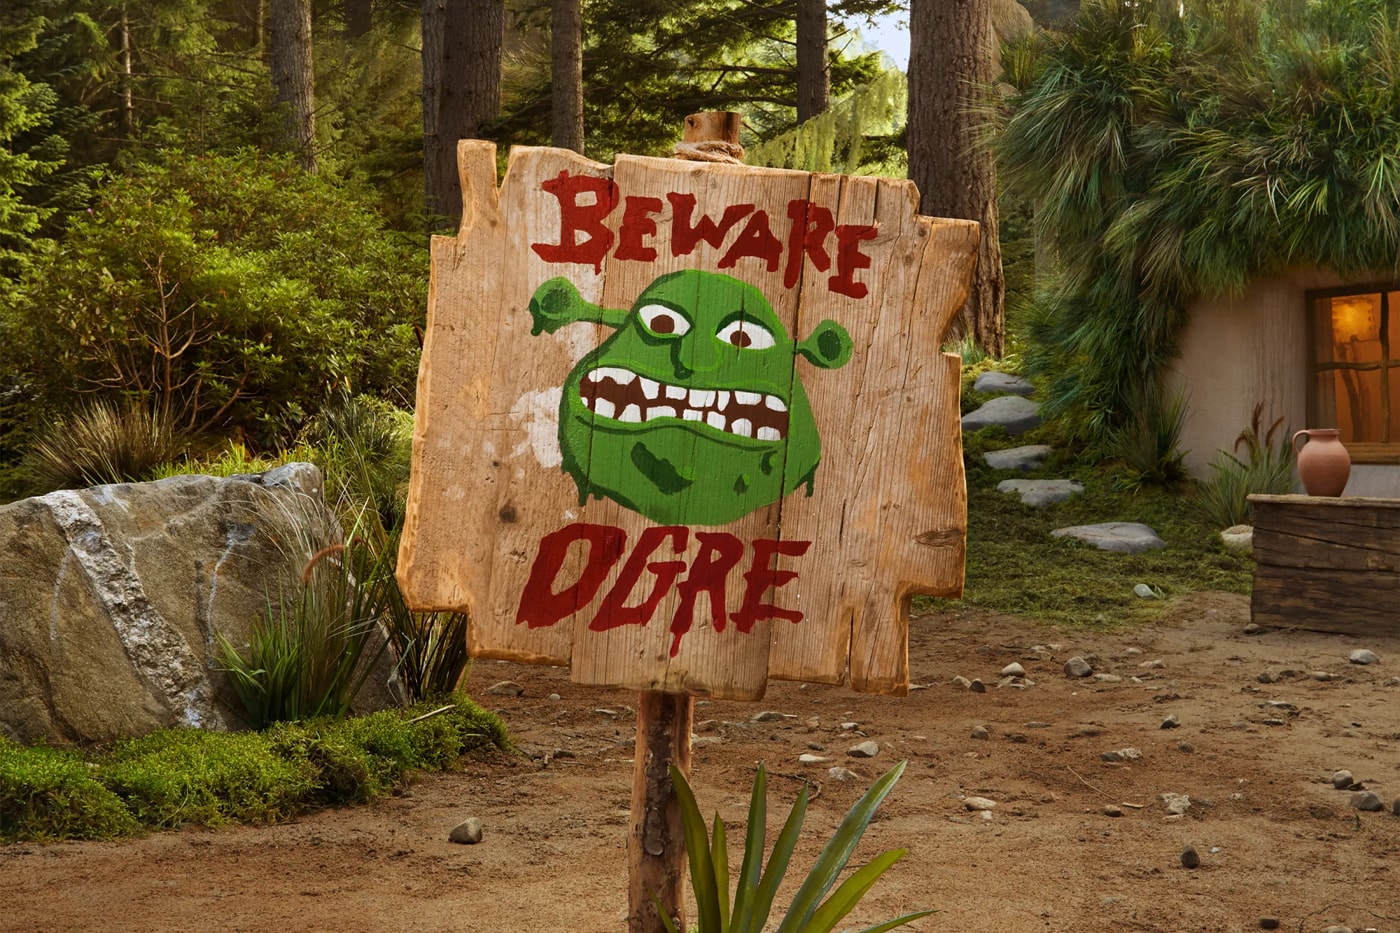 映画『シュレック』に登場する沼地の家がエアービーアンドビーで宿泊可能に You Can Now Spend a Night in Shrek's Swamp on Airbnb donkey ogre dreamworks animations halloween fairytale stay scotland